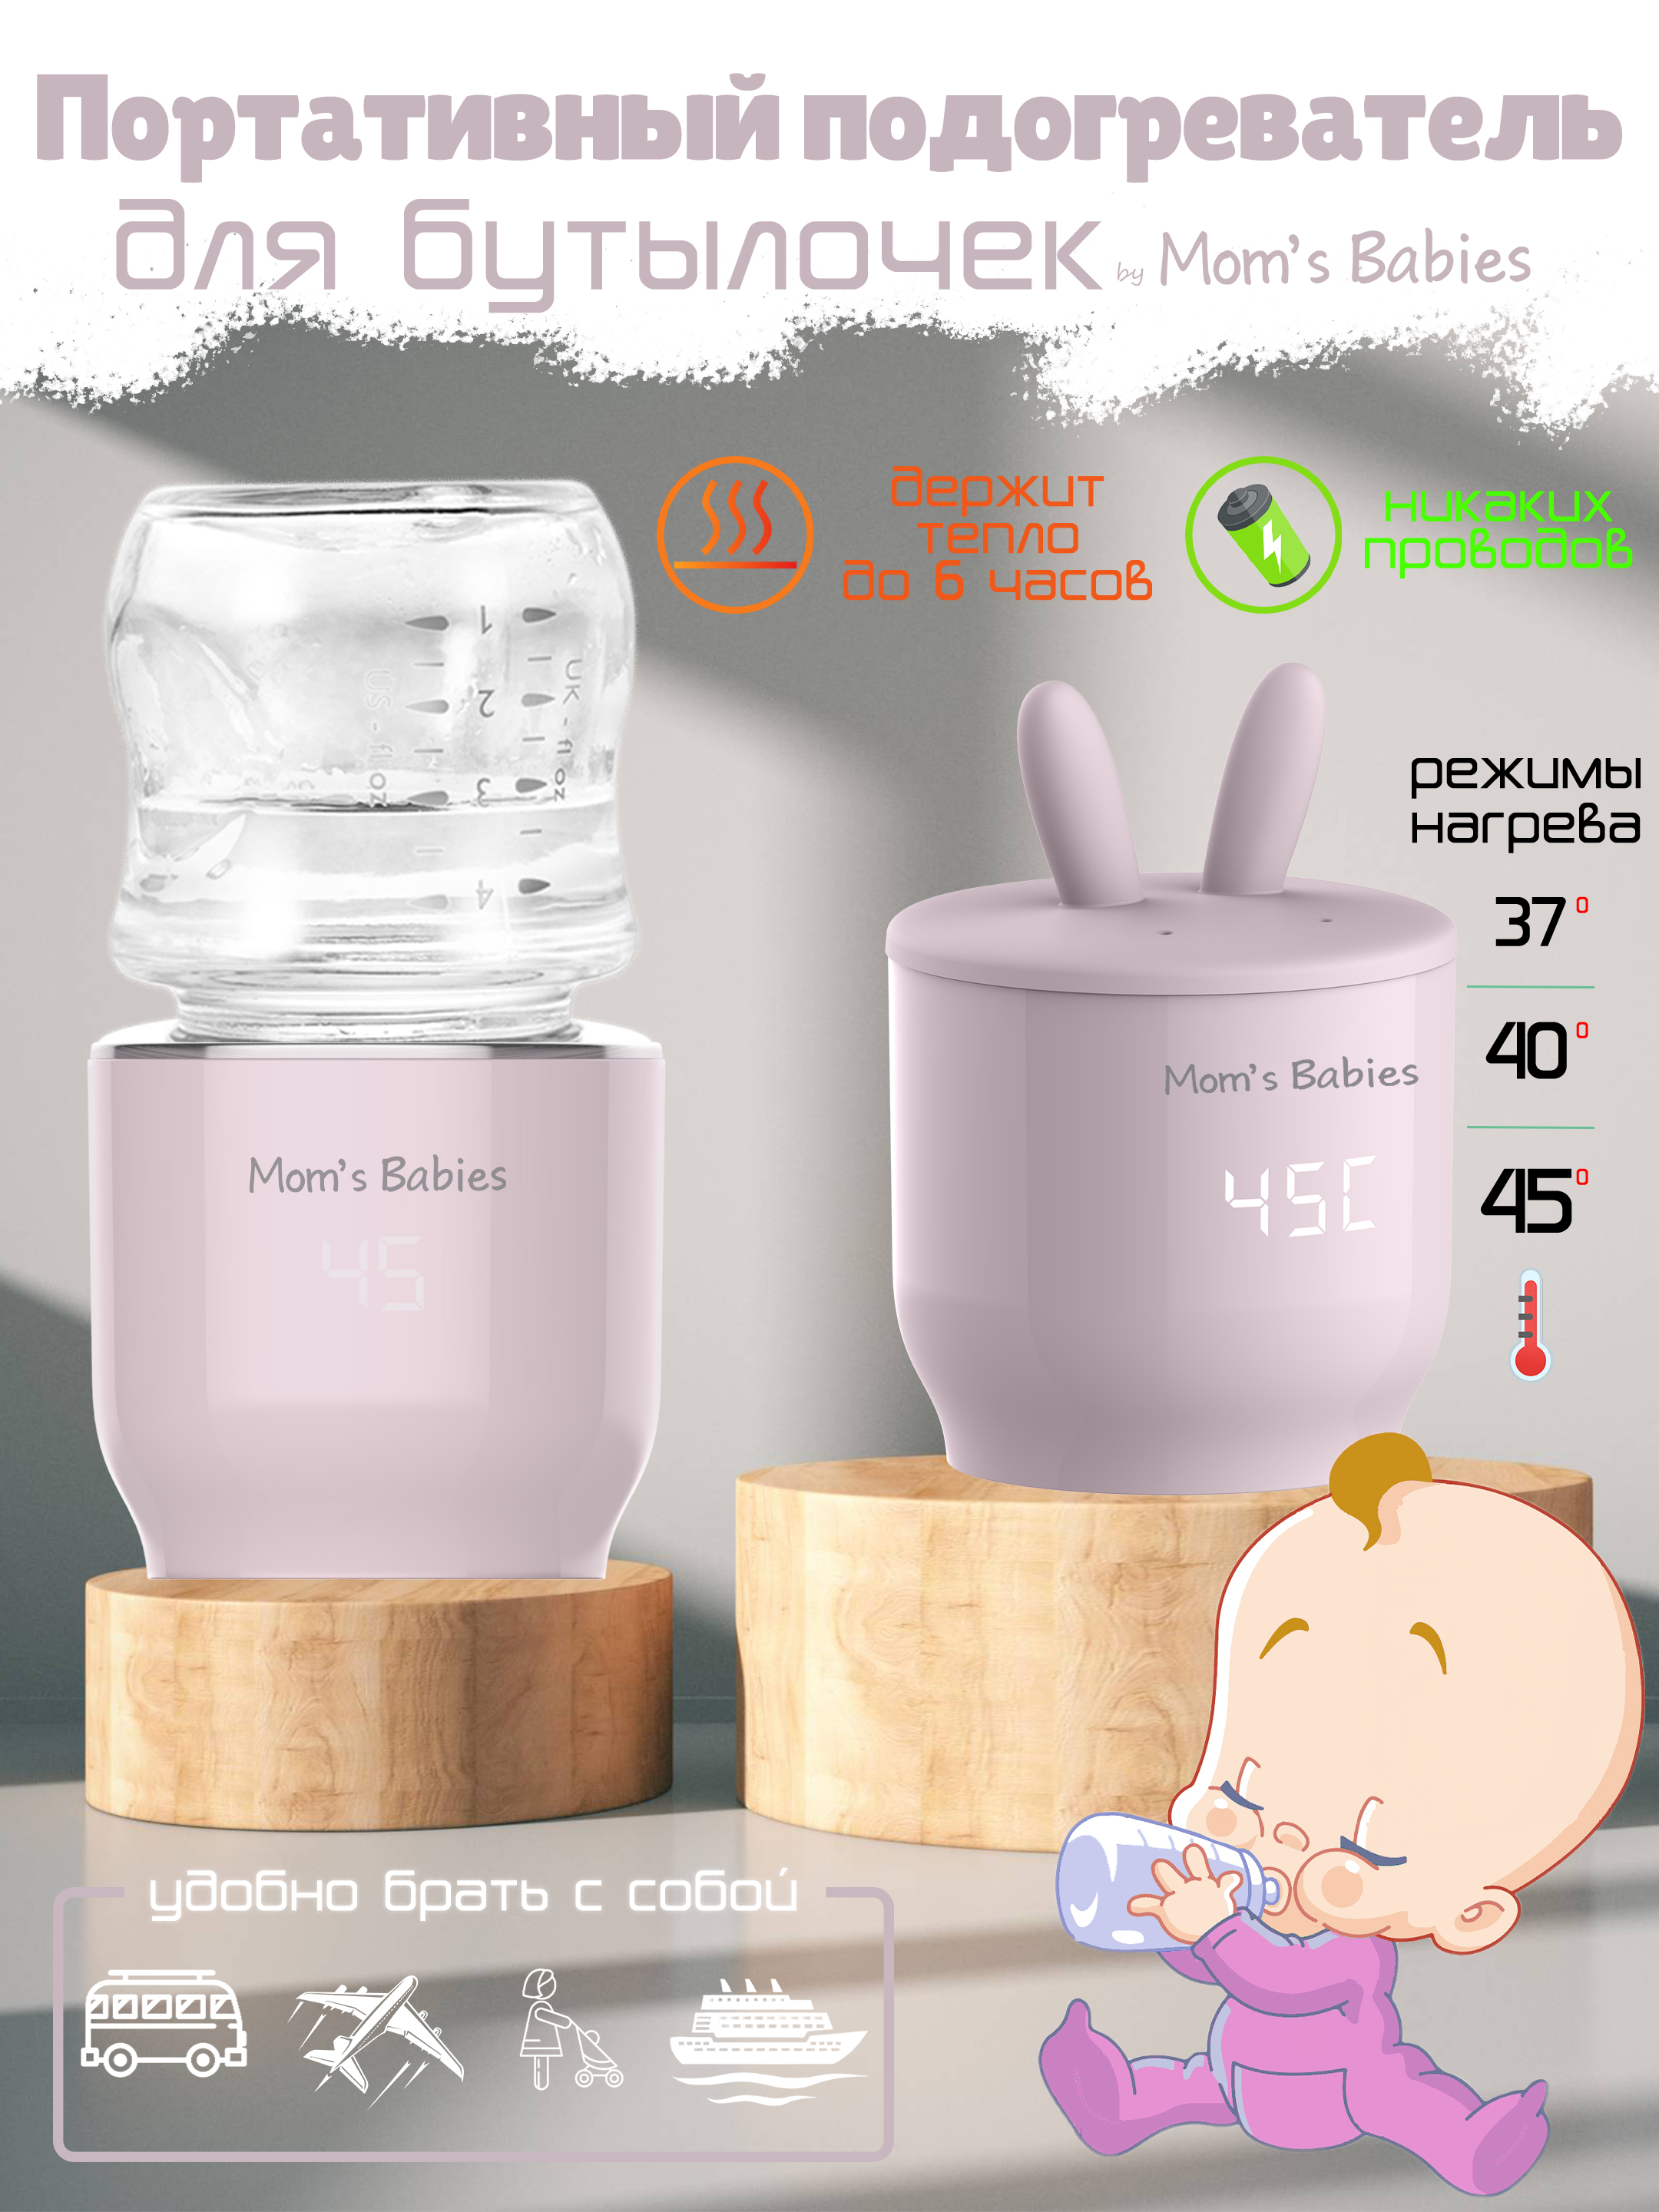 Портативный подогреватель Mom's Babies FS01 для бутылочек и детского питания розовый подогреватель canpol babies для бутылочек электрический универсальный